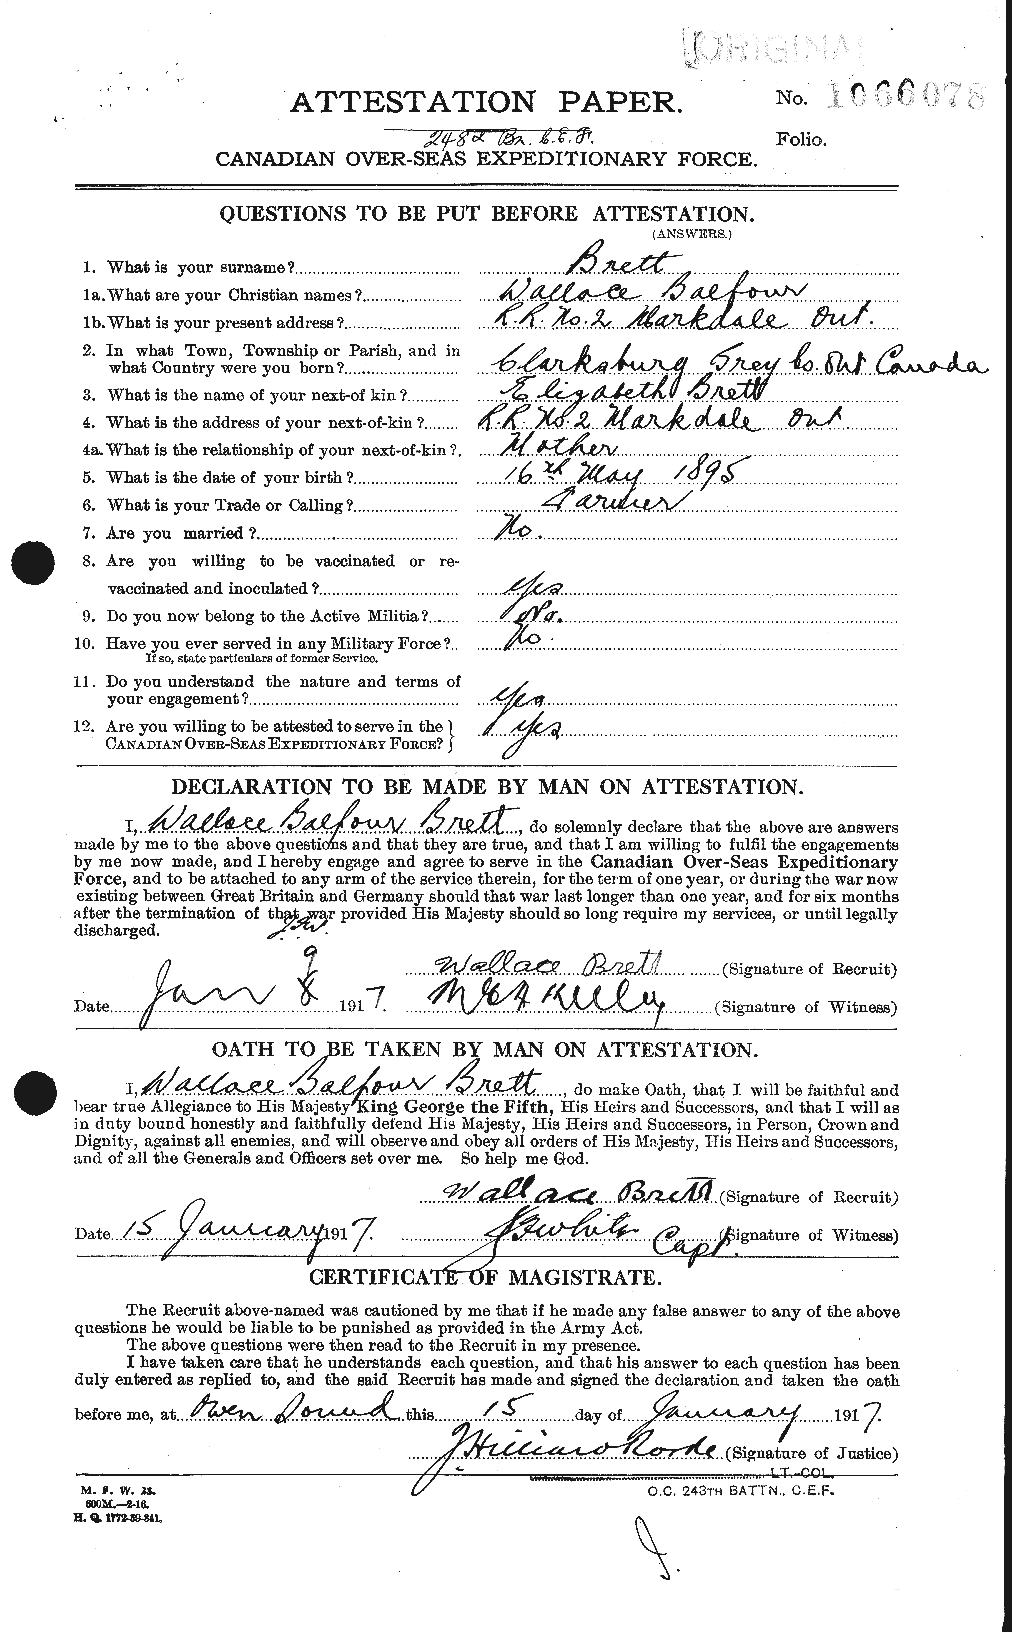 Dossiers du Personnel de la Première Guerre mondiale - CEC 258864a